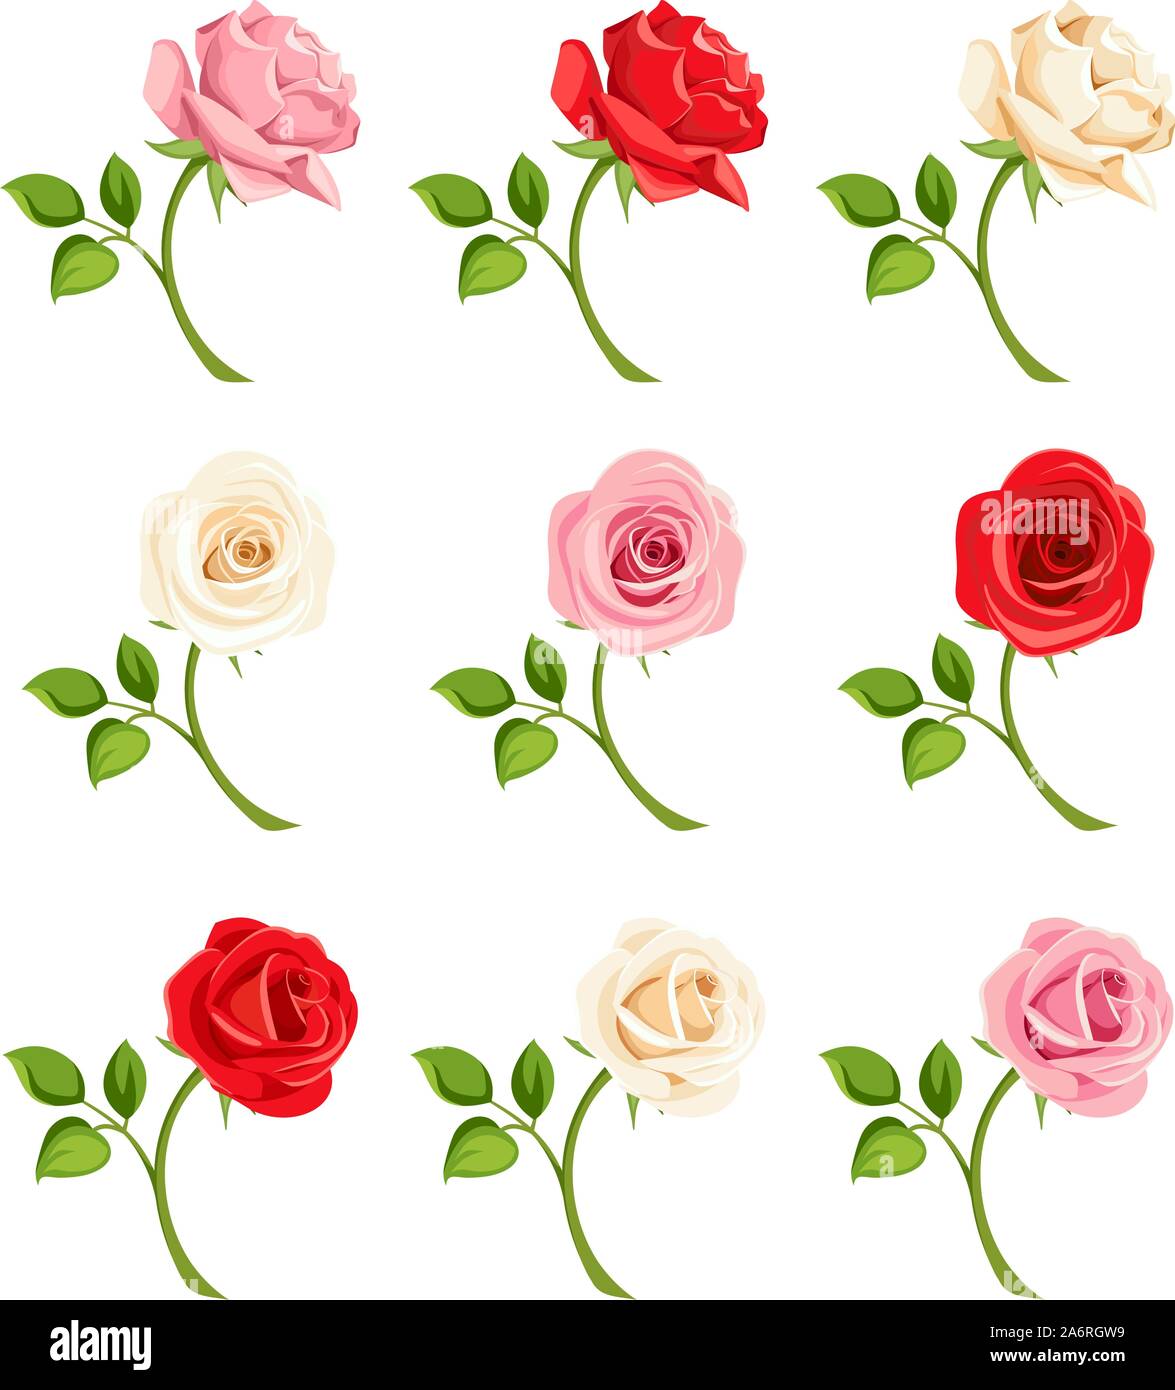 Vektor einrichten von rot, rosa und weißen Rosen mit Stängel auf Weiß isoliert. Stock Vektor